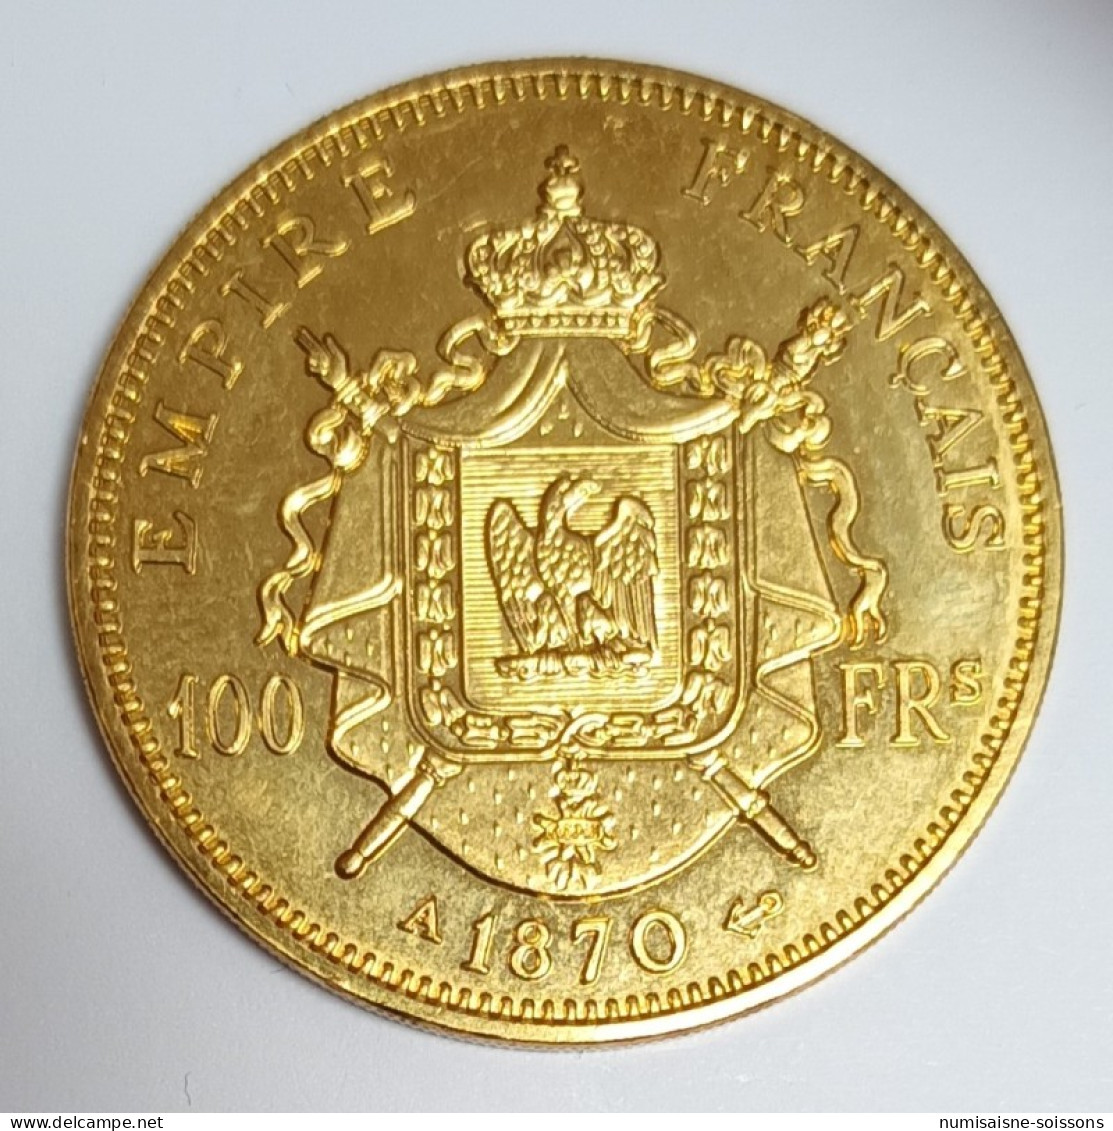 FRANCE - REPRODUCTION - 100 FRANCS 1870 - NAPOLÉON III - CUIVRE DORÉ - SPL - 100 Francs (or)